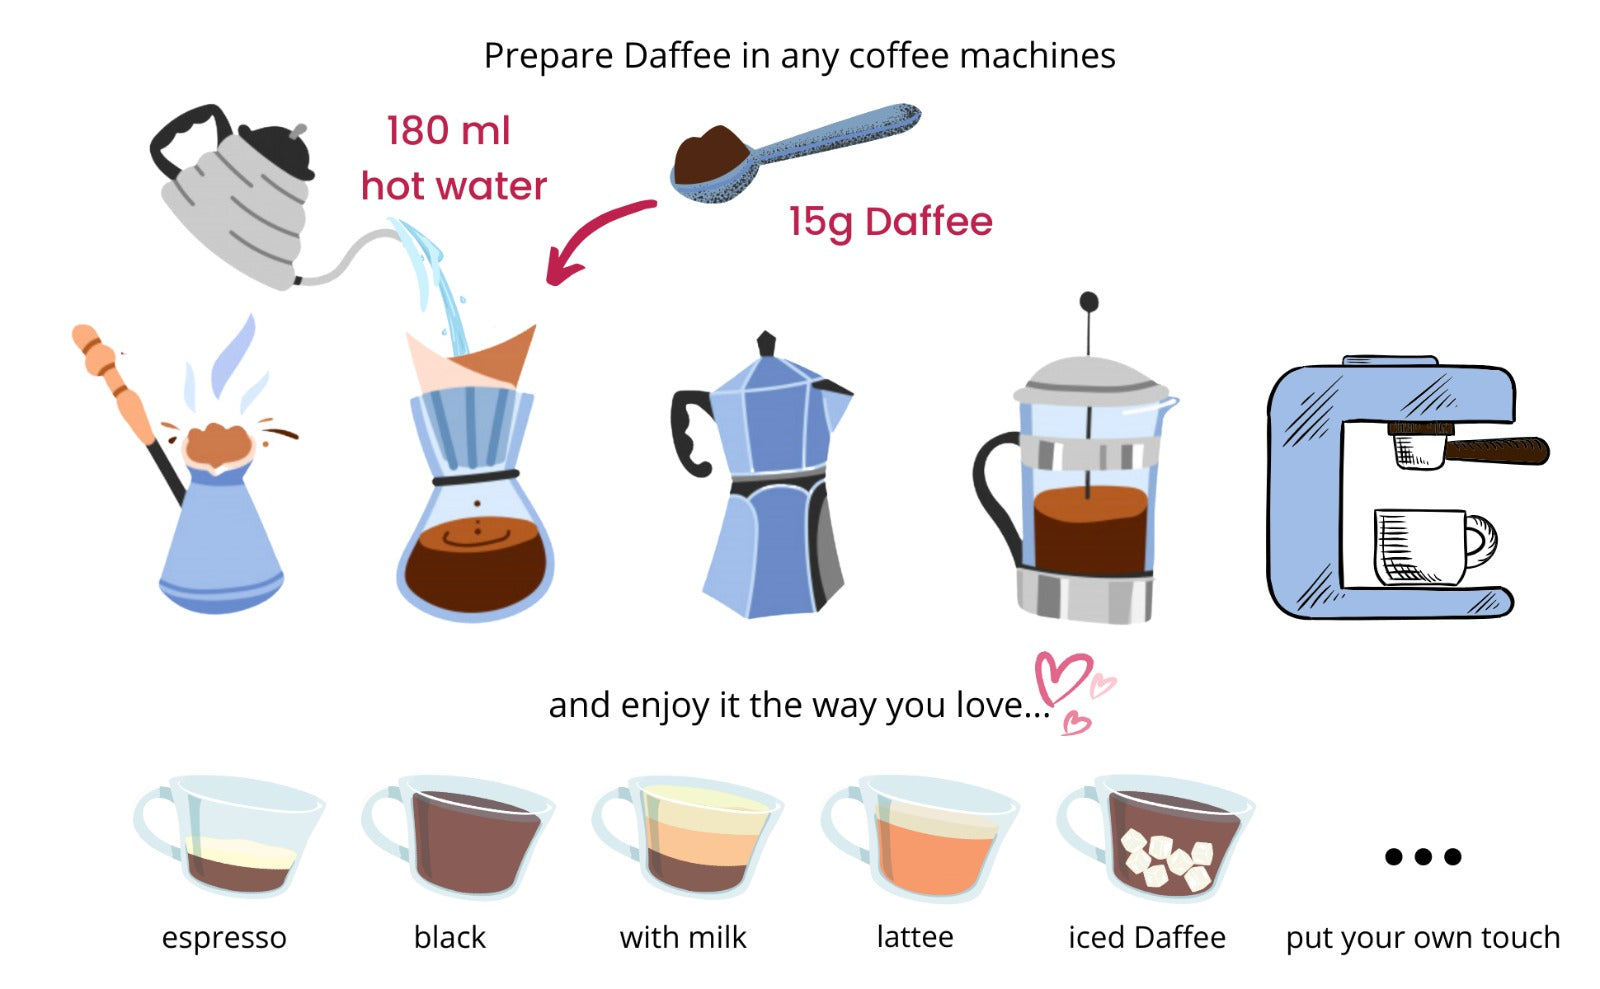 Daffee preperation recipe